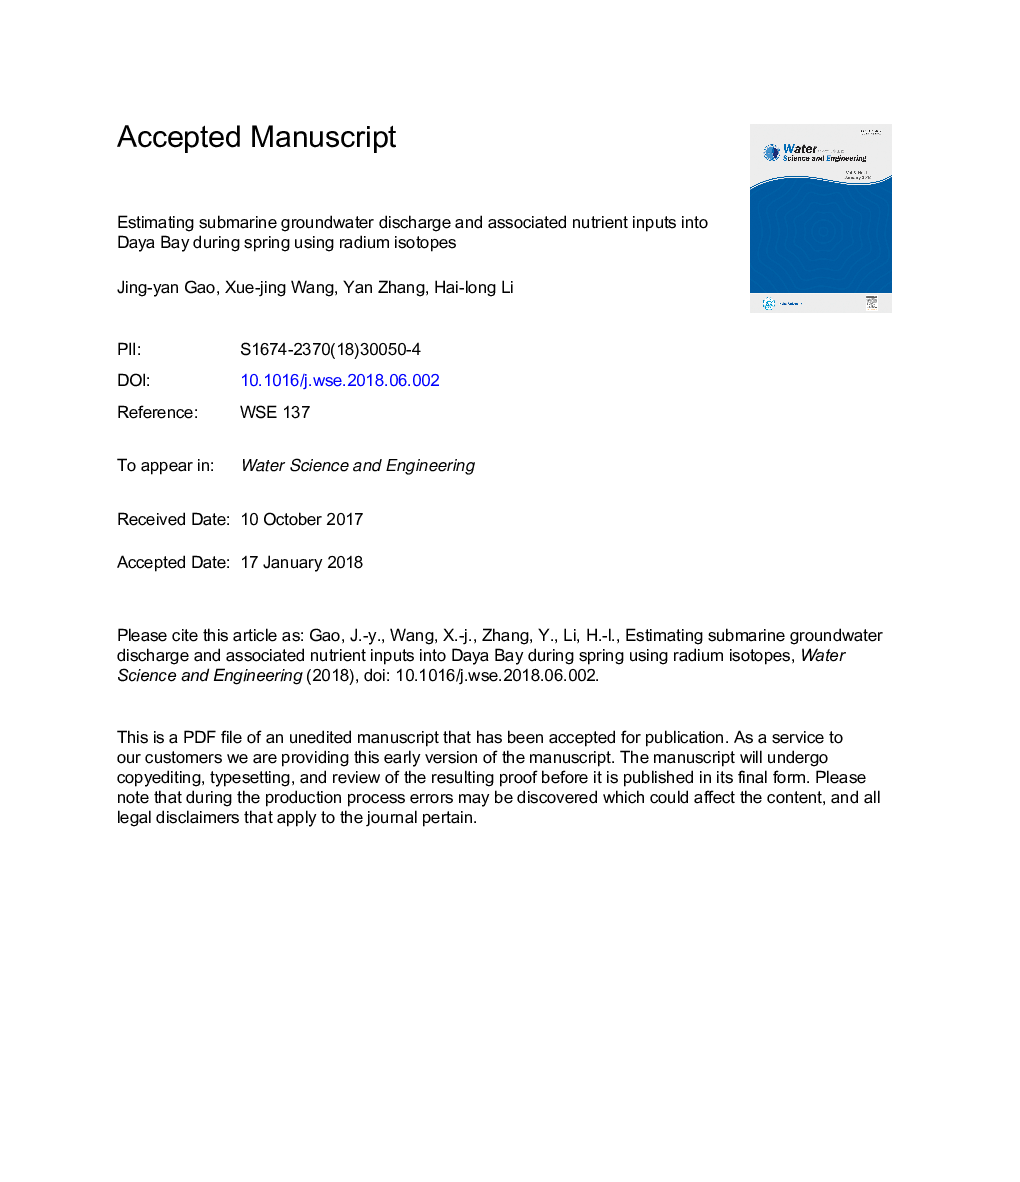 برآورد تخلیه آبهای زیرزمینی و ورود مواد غذایی مرتبط به آن در خلیج دایا در فصل بهار با استفاده از ایزوتوپهای رادیوم 